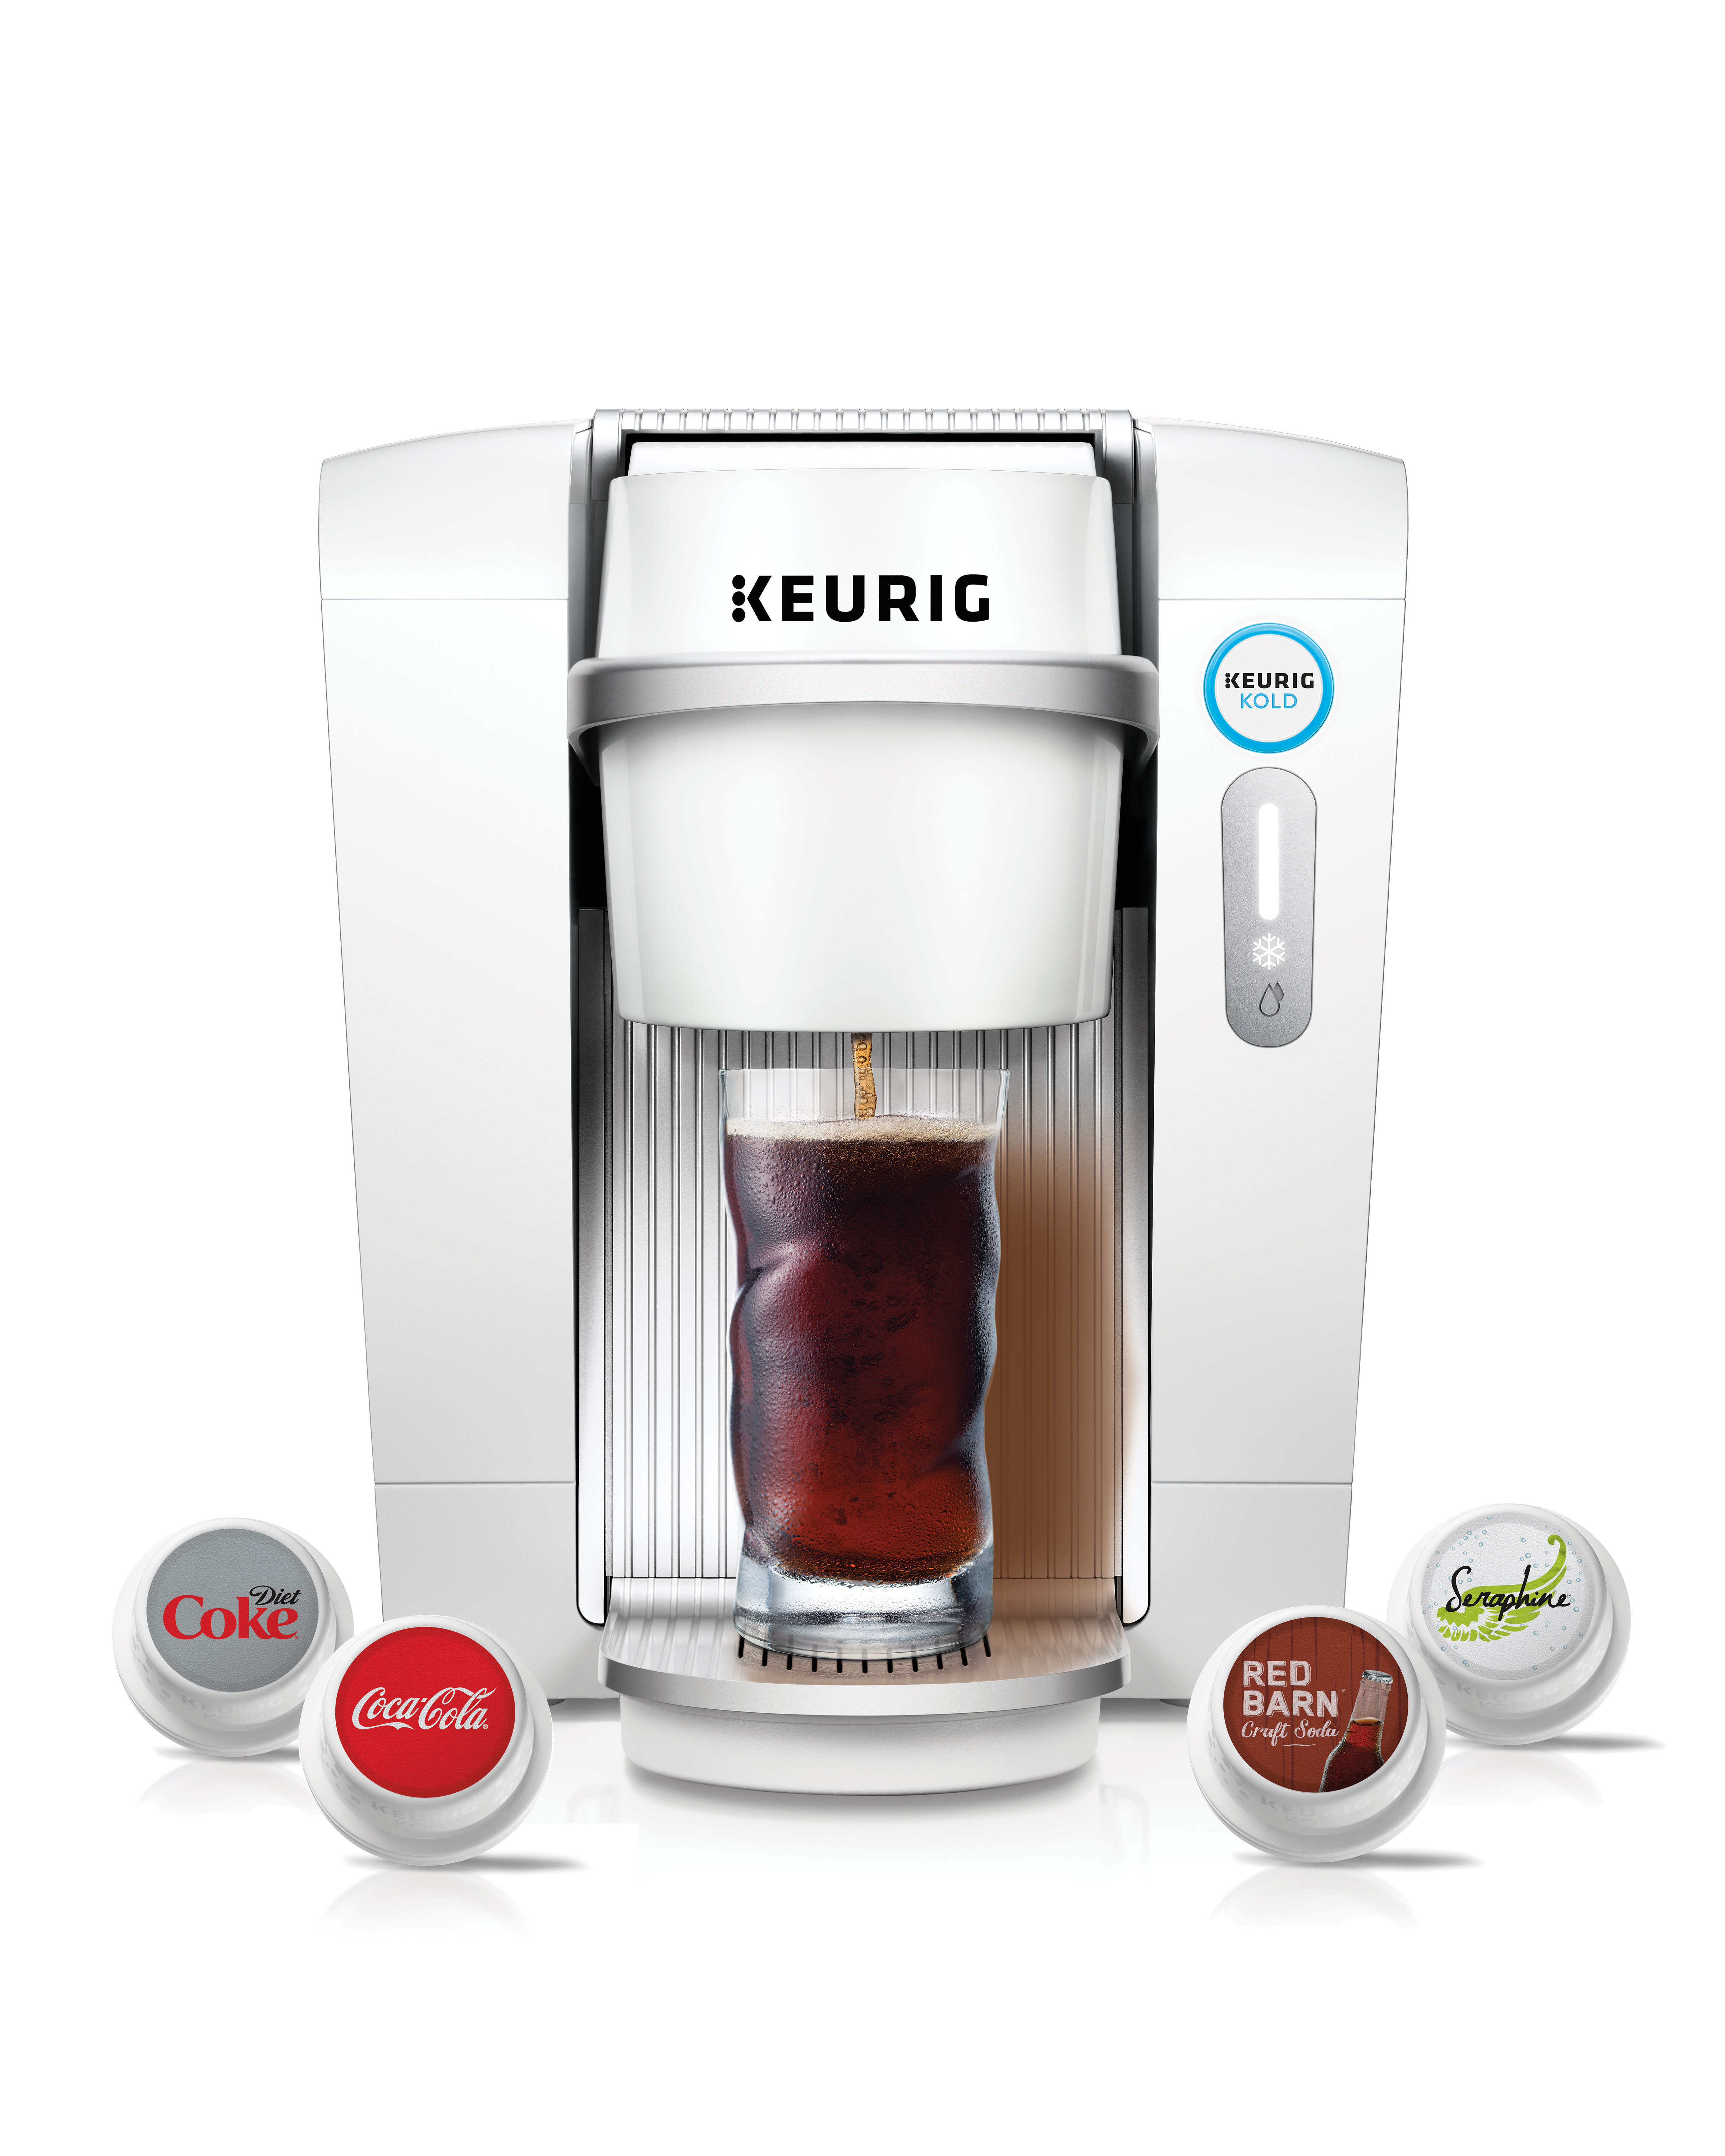 Keurig: Cold Beverages 5x Bigger Than Hot Beverages